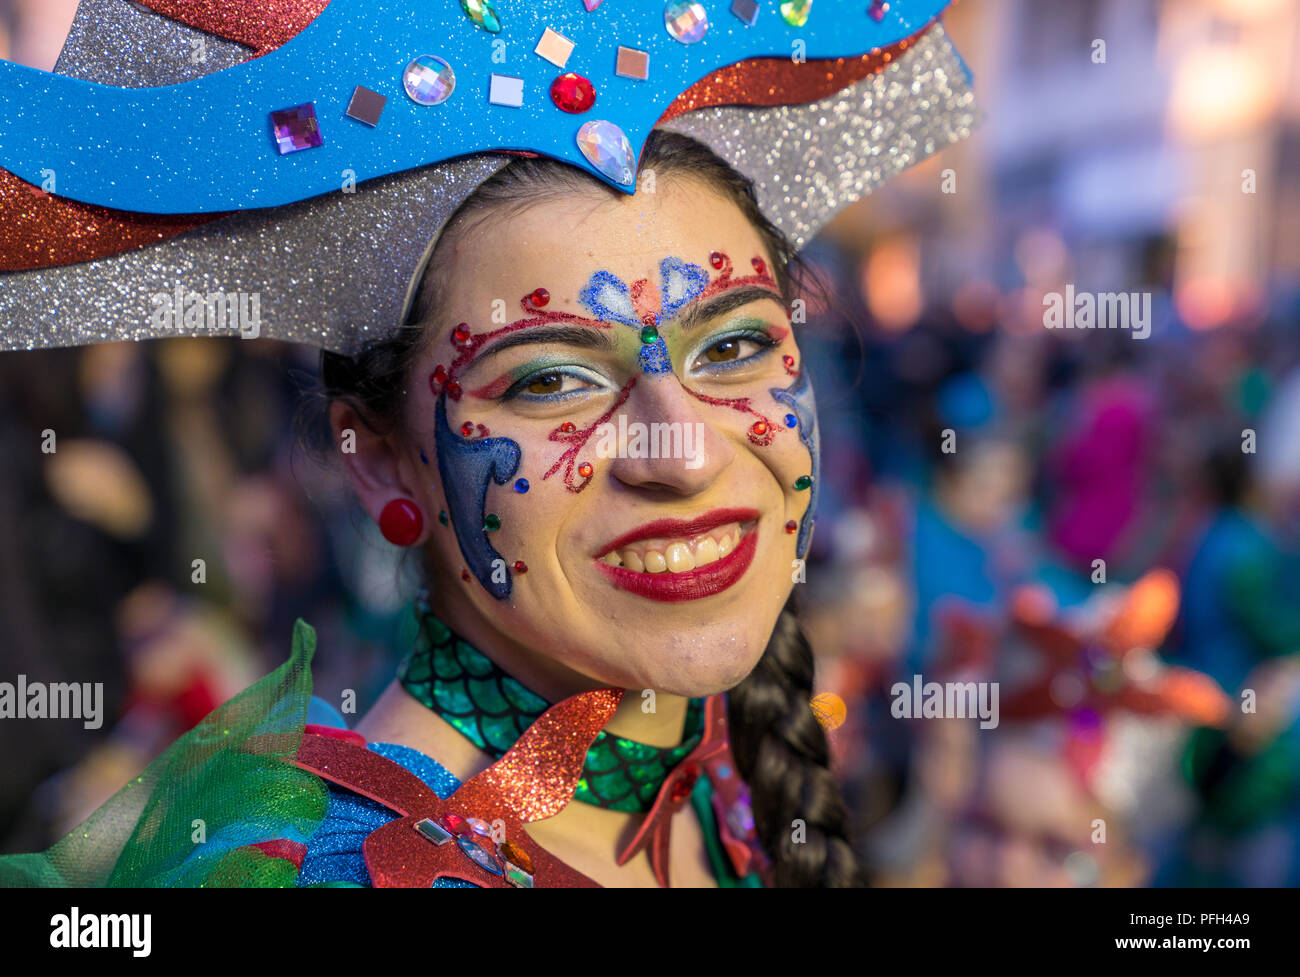 Sciacca, Agrigento, Italie, janvier 2018. Les participants au carnaval haut en couleurs qui a lieu chaque année à Sciacca, Sicile Banque D'Images